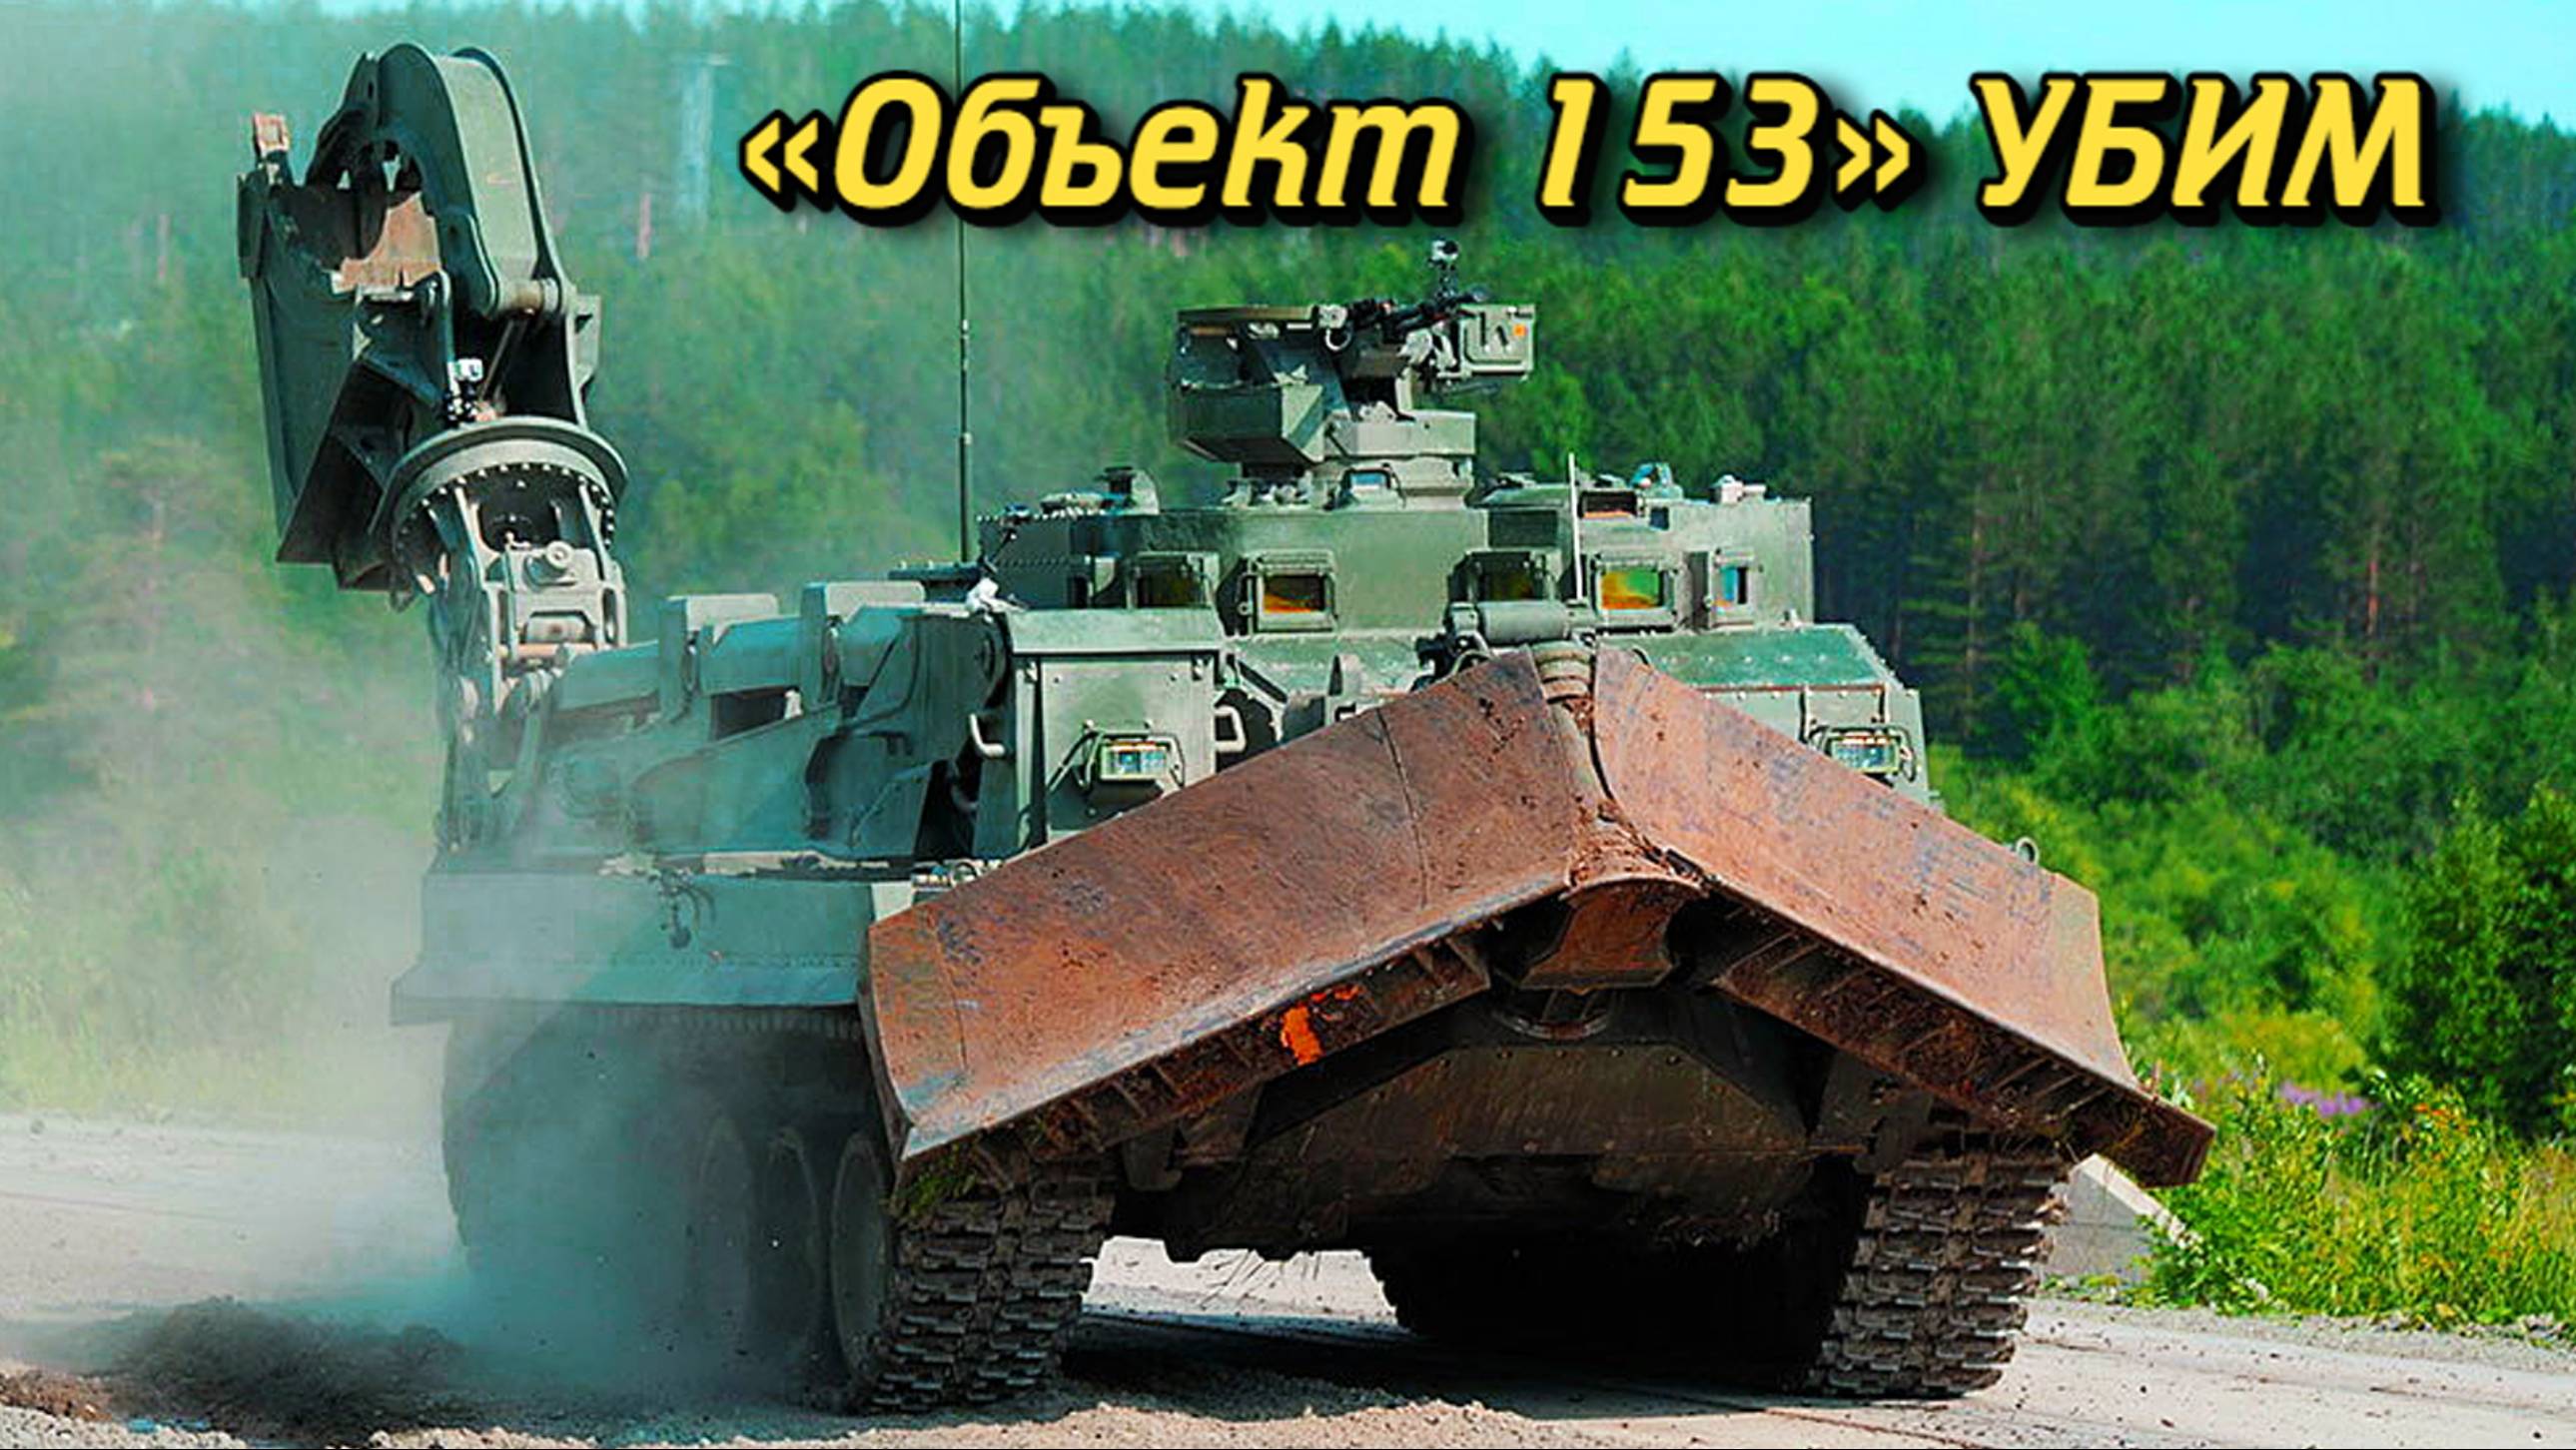 Боевой скорпион «Объект 153» УБИМ Бронированная военная инженерная машина